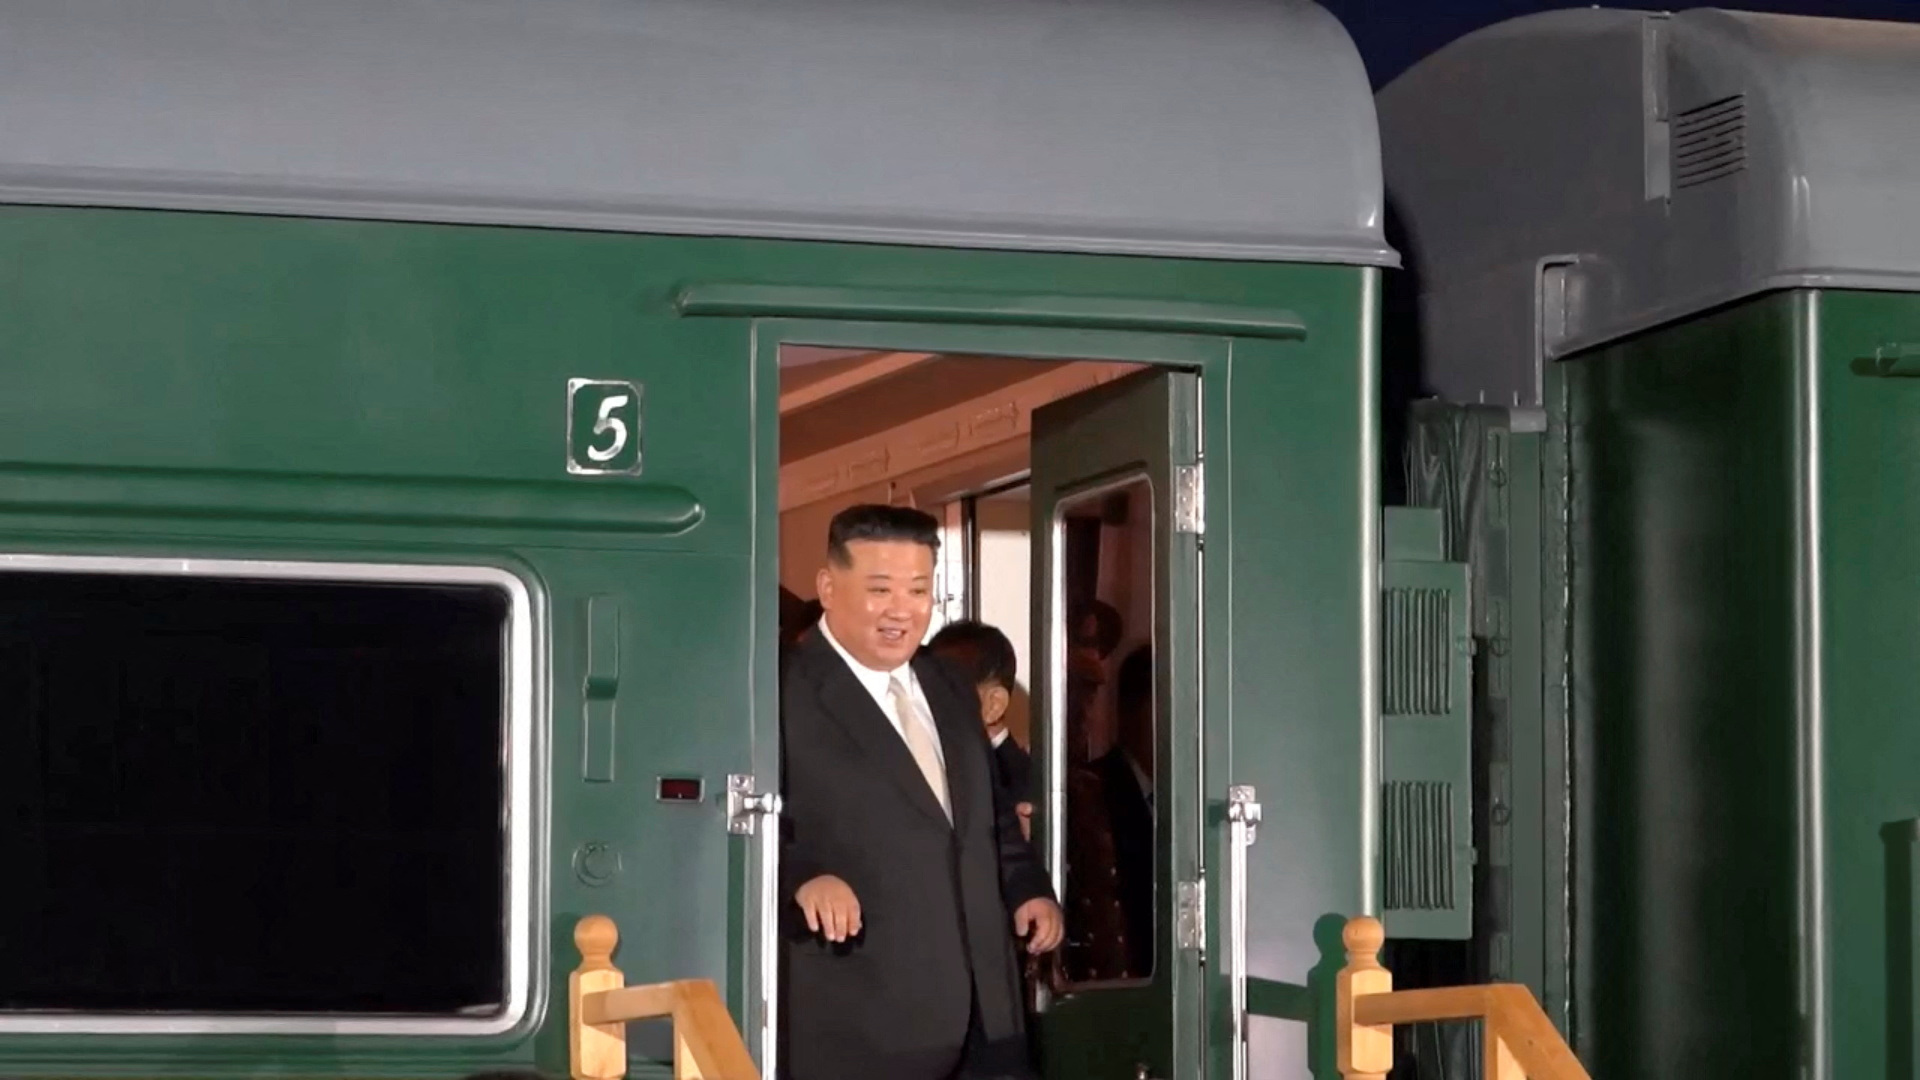 Κιμ Γιονγκ Ουν: Εντυπωσιακές εικόνες από την άφιξη του στη Ρωσία - Πήγε με το τεθωρακισμένο τρένο του